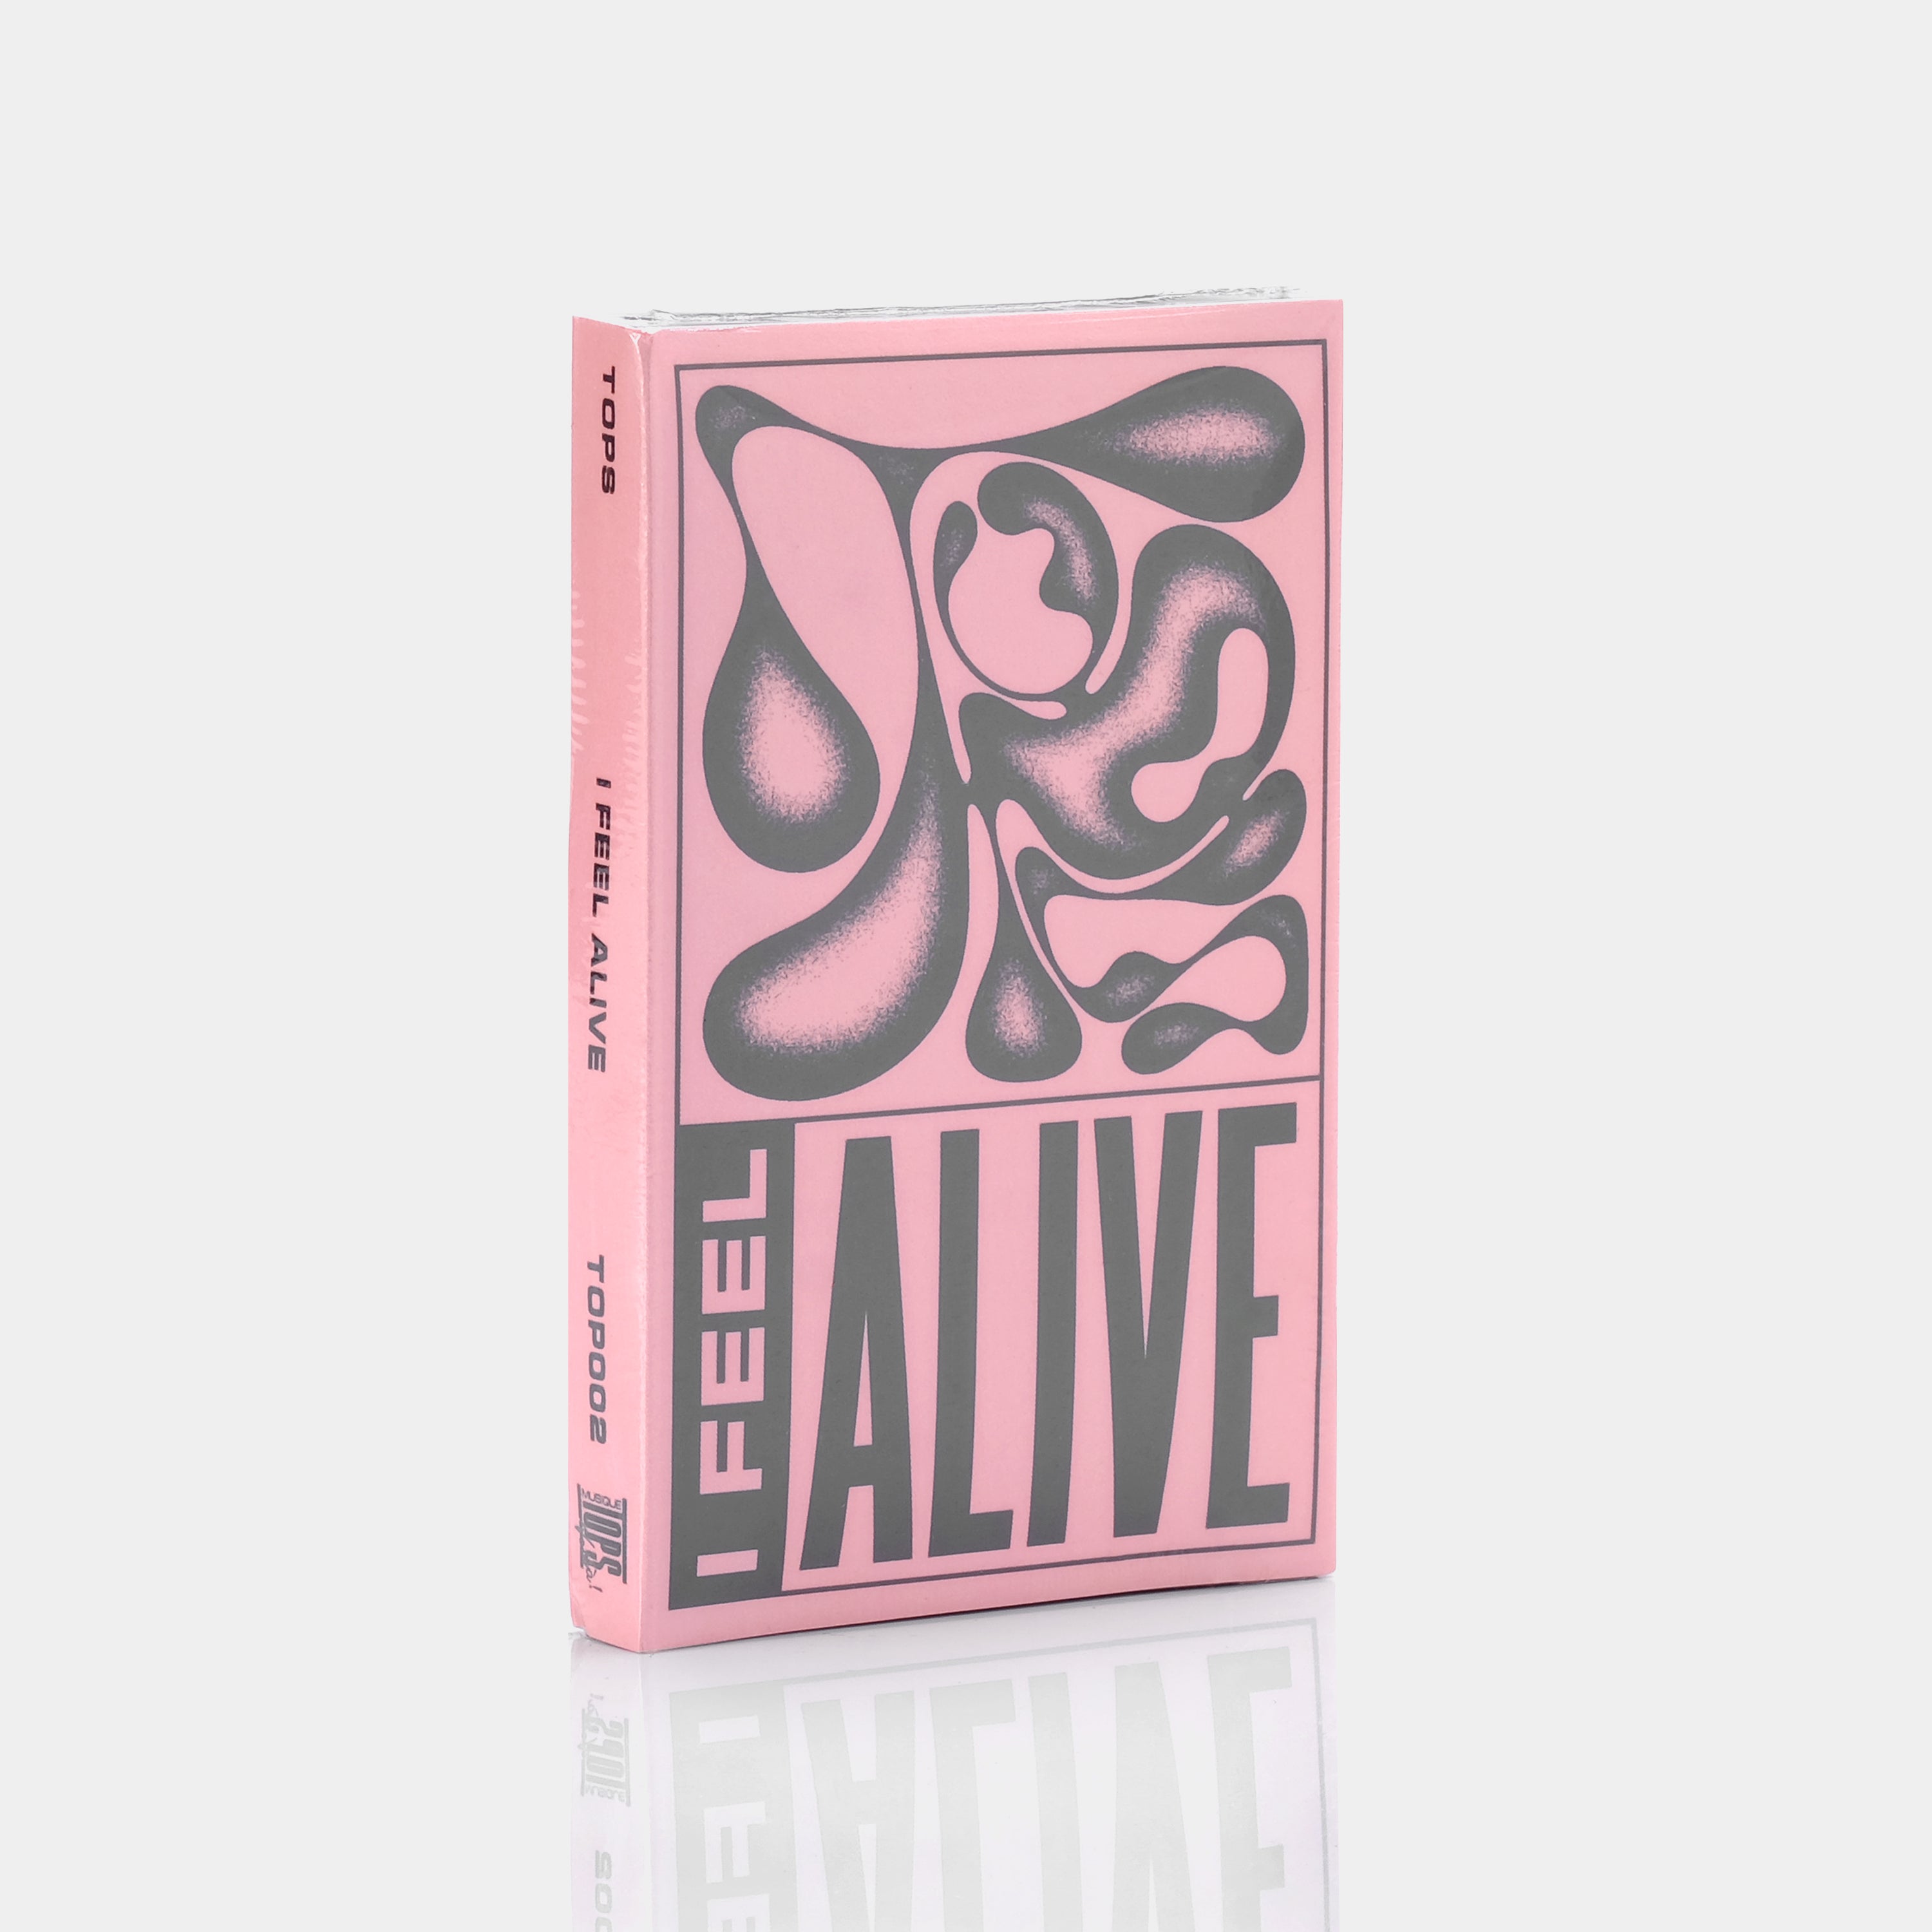 TOPS - I Feel Alive Cassette Tape